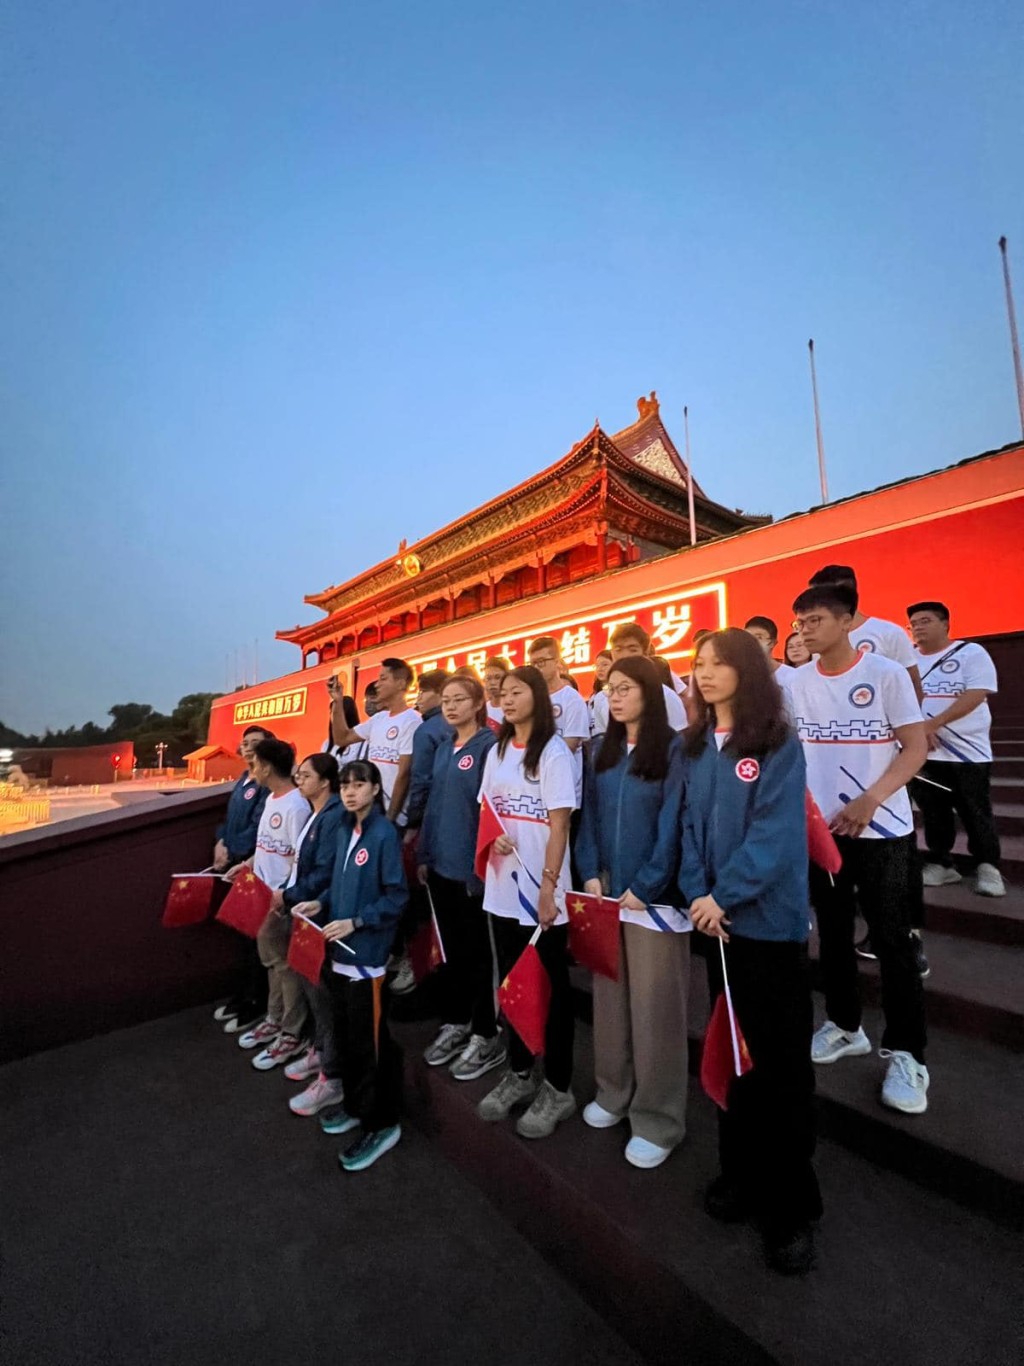 「保安局青少年制服团队领袖」成员早前访北京陕西。资料图片